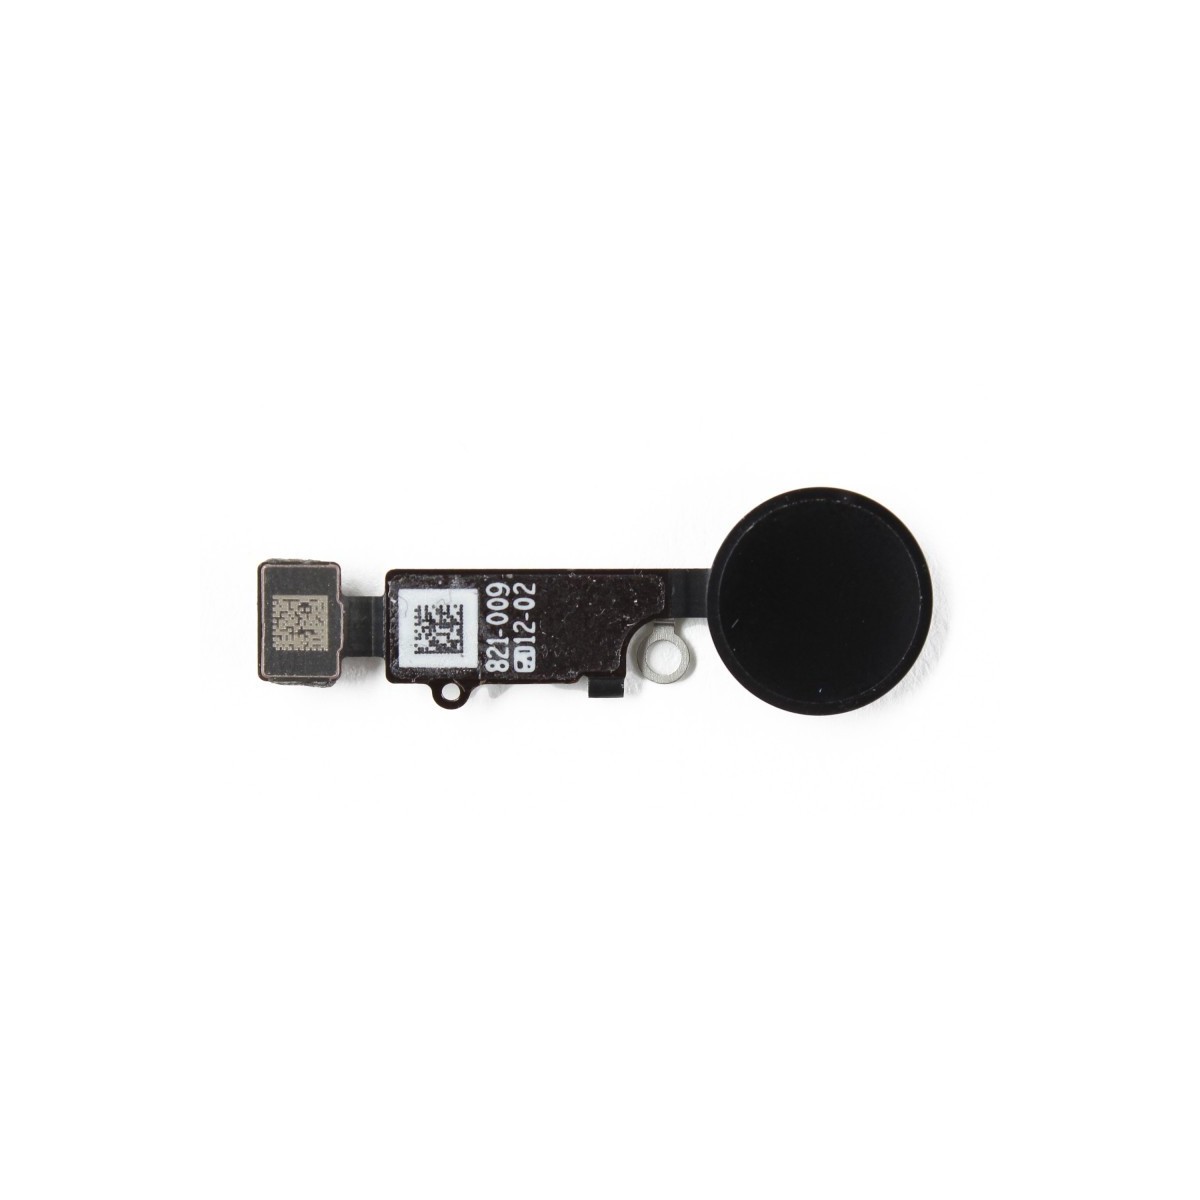 Bouton home noir compatible iPhone 7 (non fonctionnel)